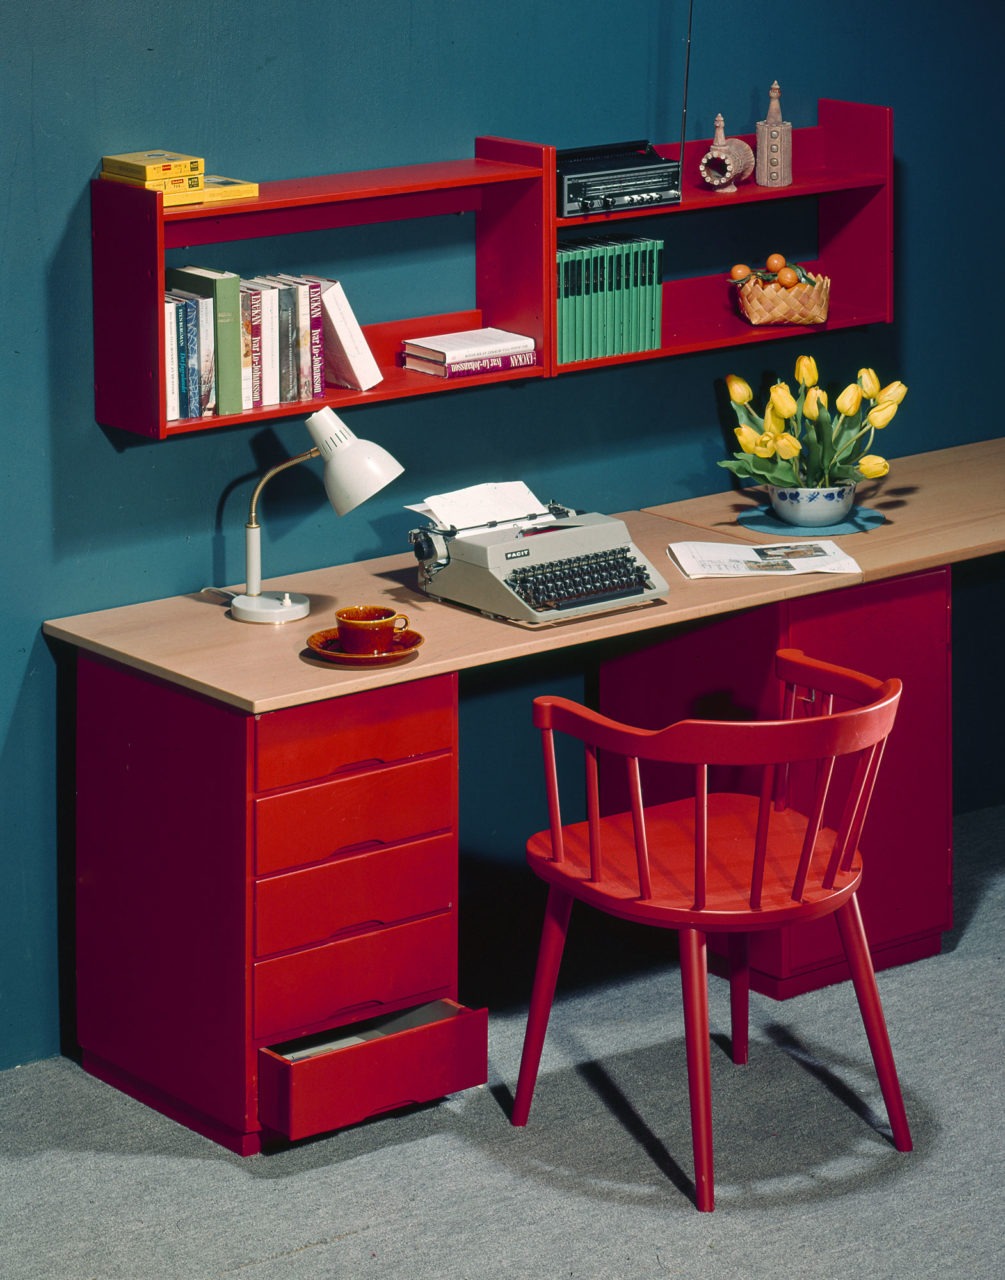 Bureau avec plateau en bois clair et autres détails rouges : étagère murale, blocs tiroirs et fauteuil à barreaux.